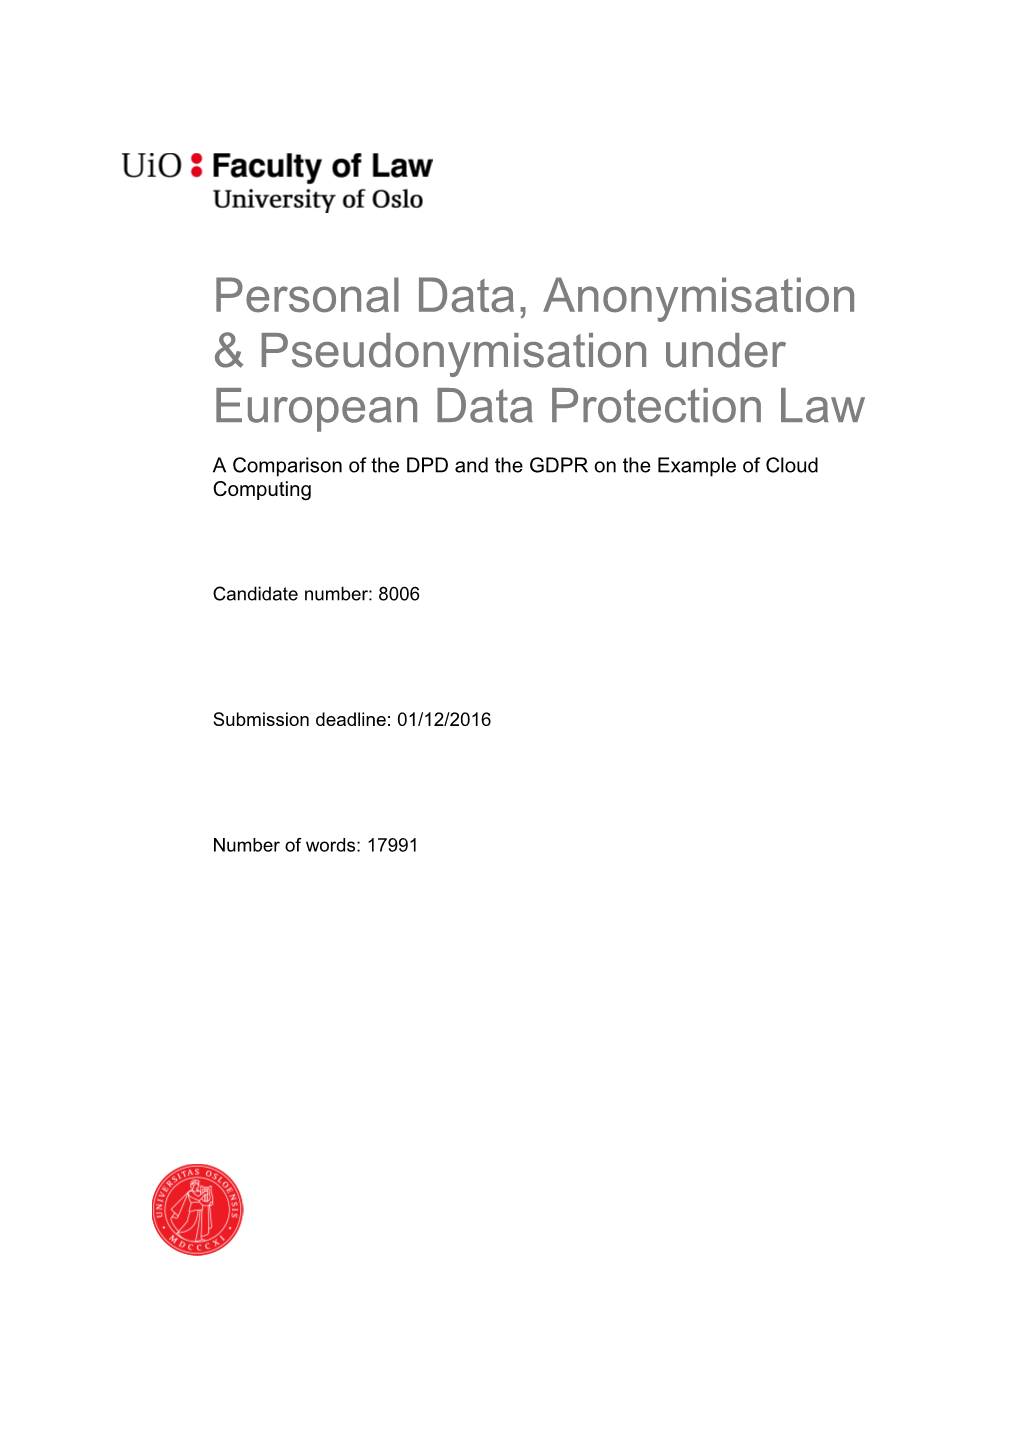 Personal Data, Anonymisation & Pseudonymisation Under European